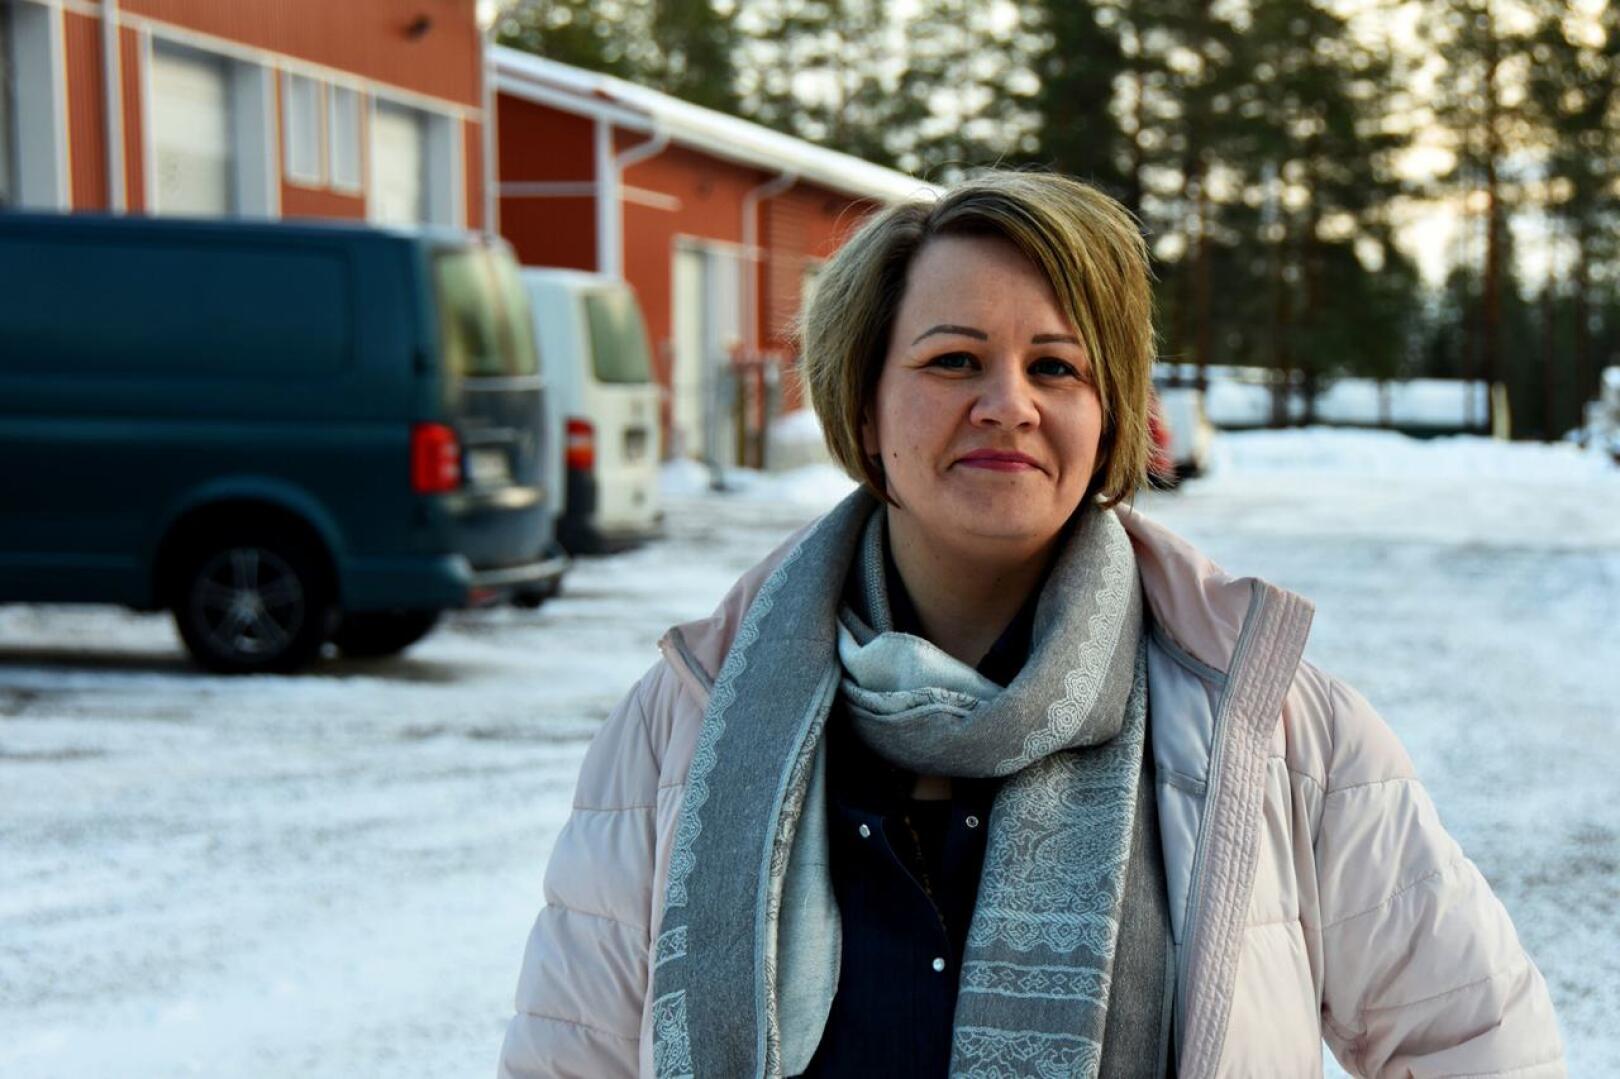 Haapaveden kaupungin yritysasiamies Marjaana Tuomikoski kannustaa yrittäjiä hakemaan myös kehittämistukia, joita nyt on hyvin tarjolla.